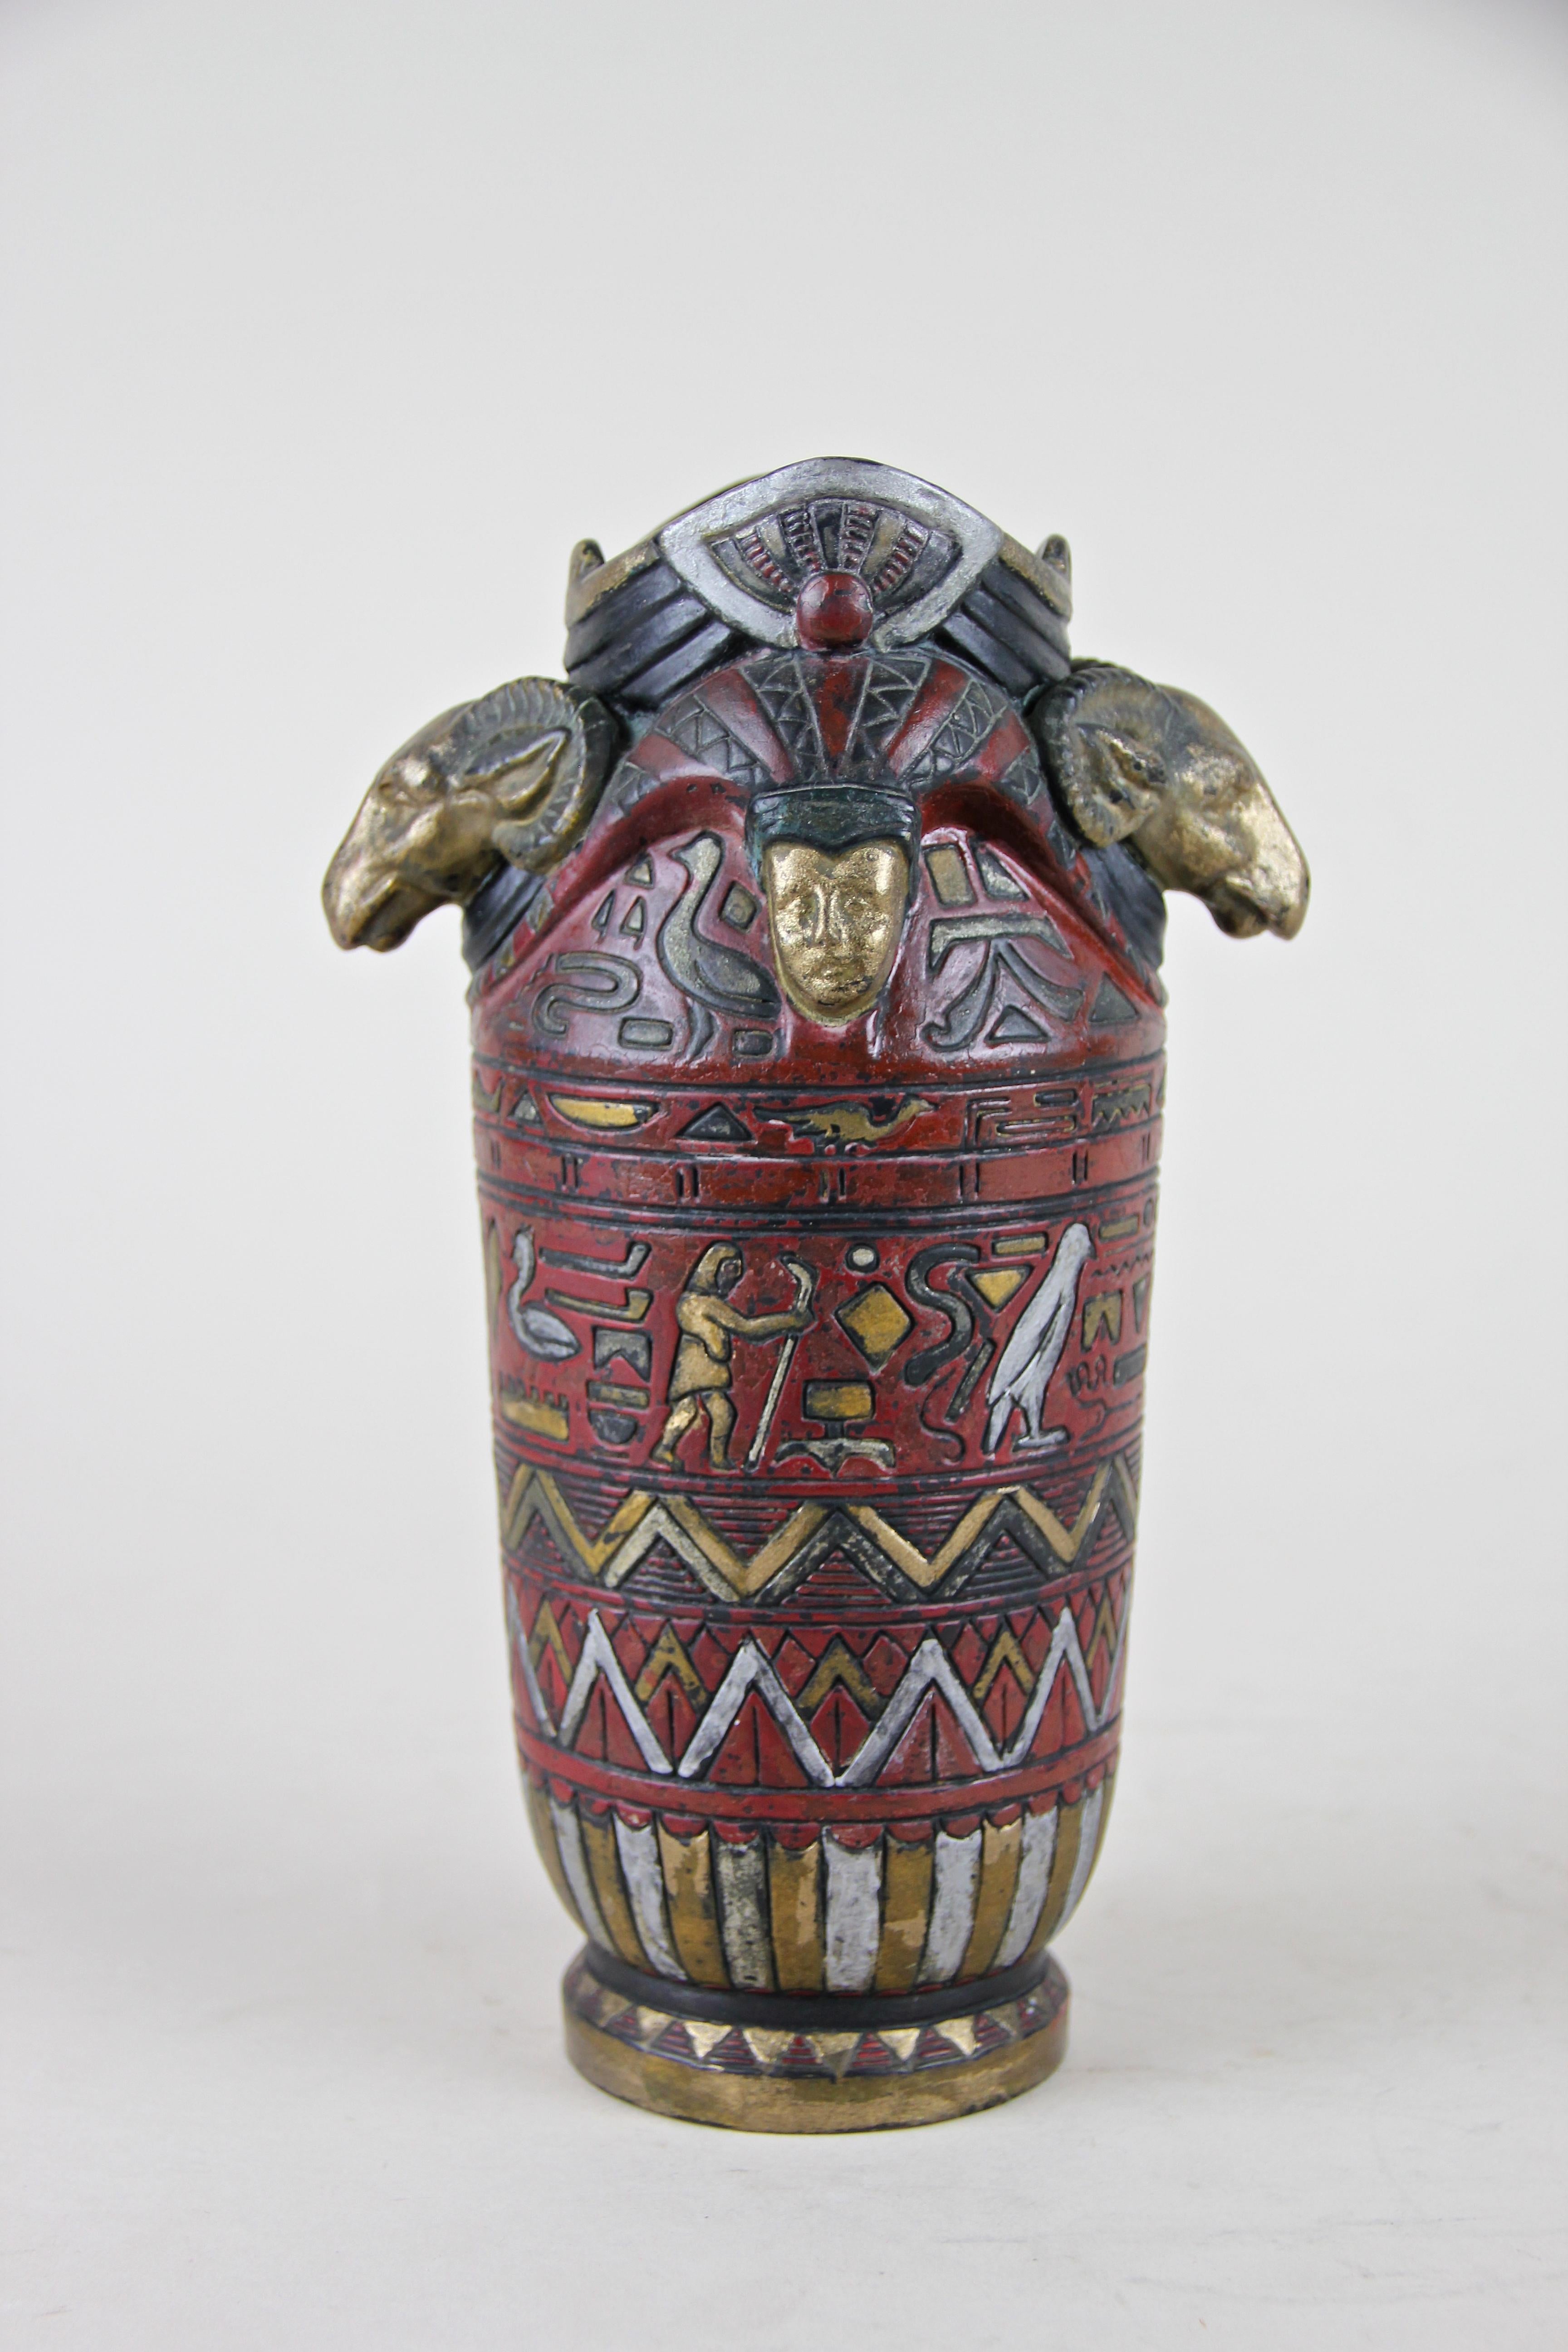 Schöne seltene Majolika-Vase von Julius Dressler, um 1895. Die fantastische Vase im ägyptischen Stil hat einen dunkelroten Körper, der mit großartig gestalteten, handgemalten Hieroglyphen verziert ist. Oben beeindrucken zwei goldene